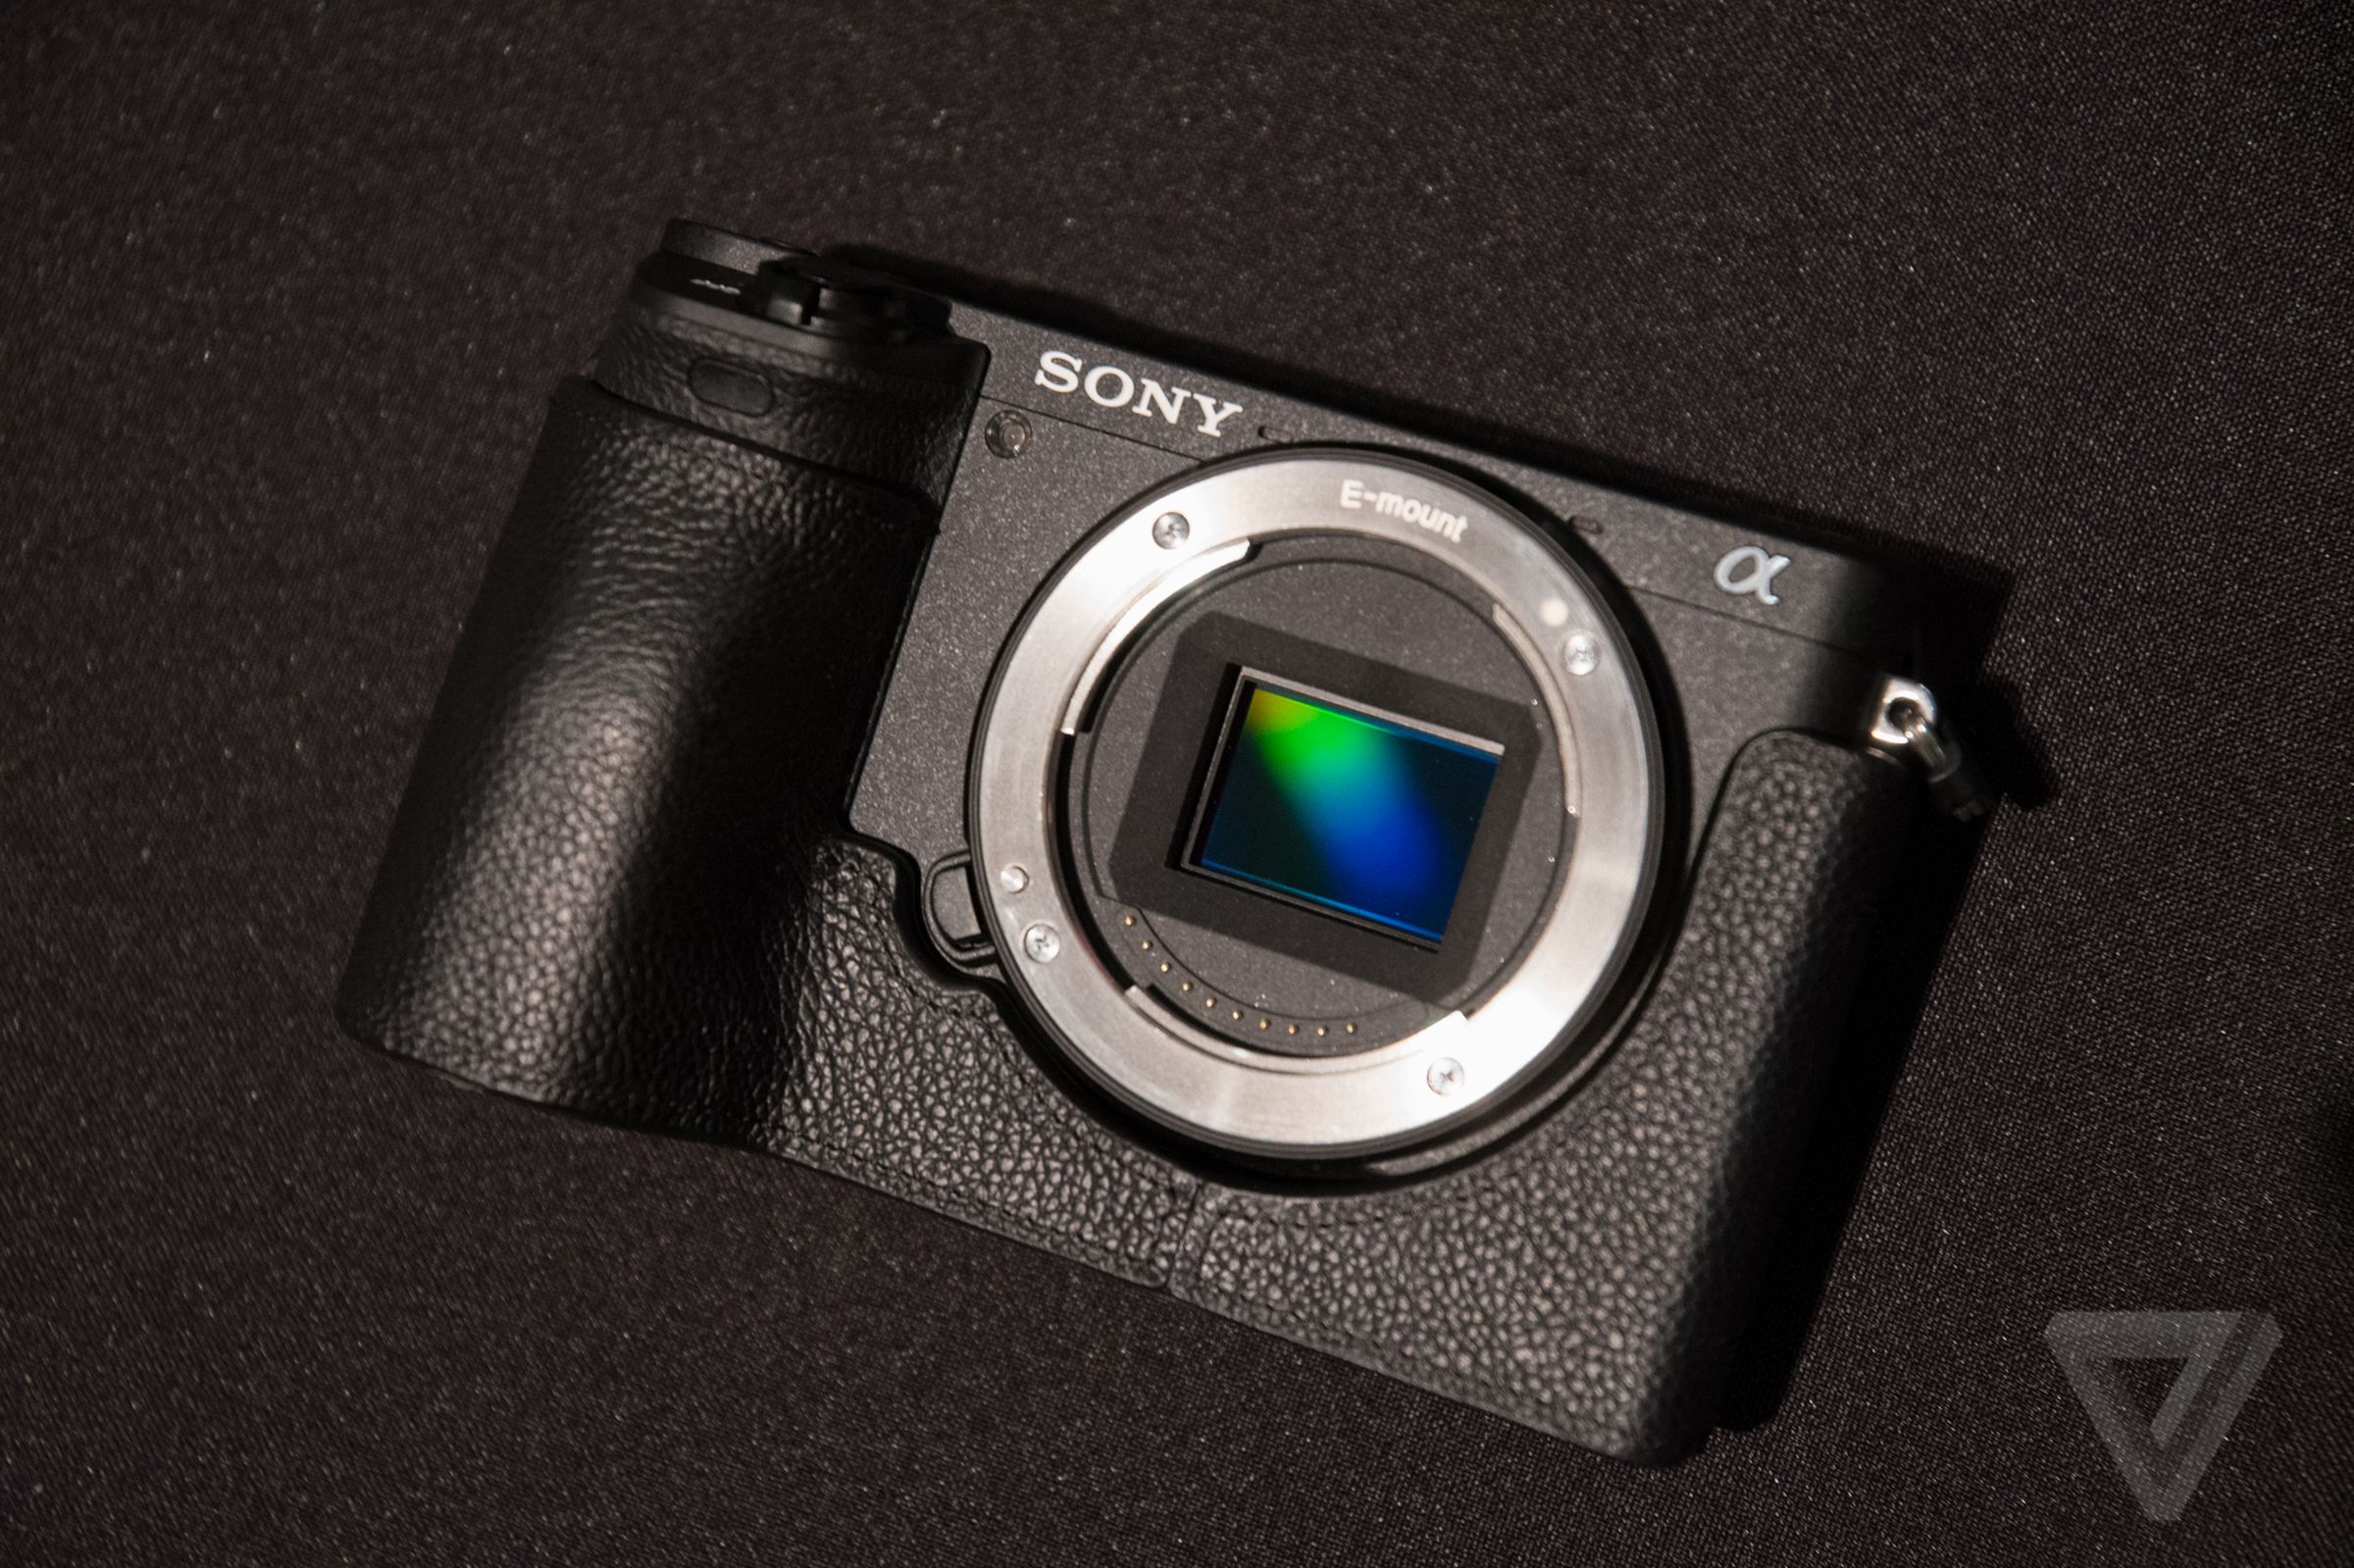 Sony A6500 in photos